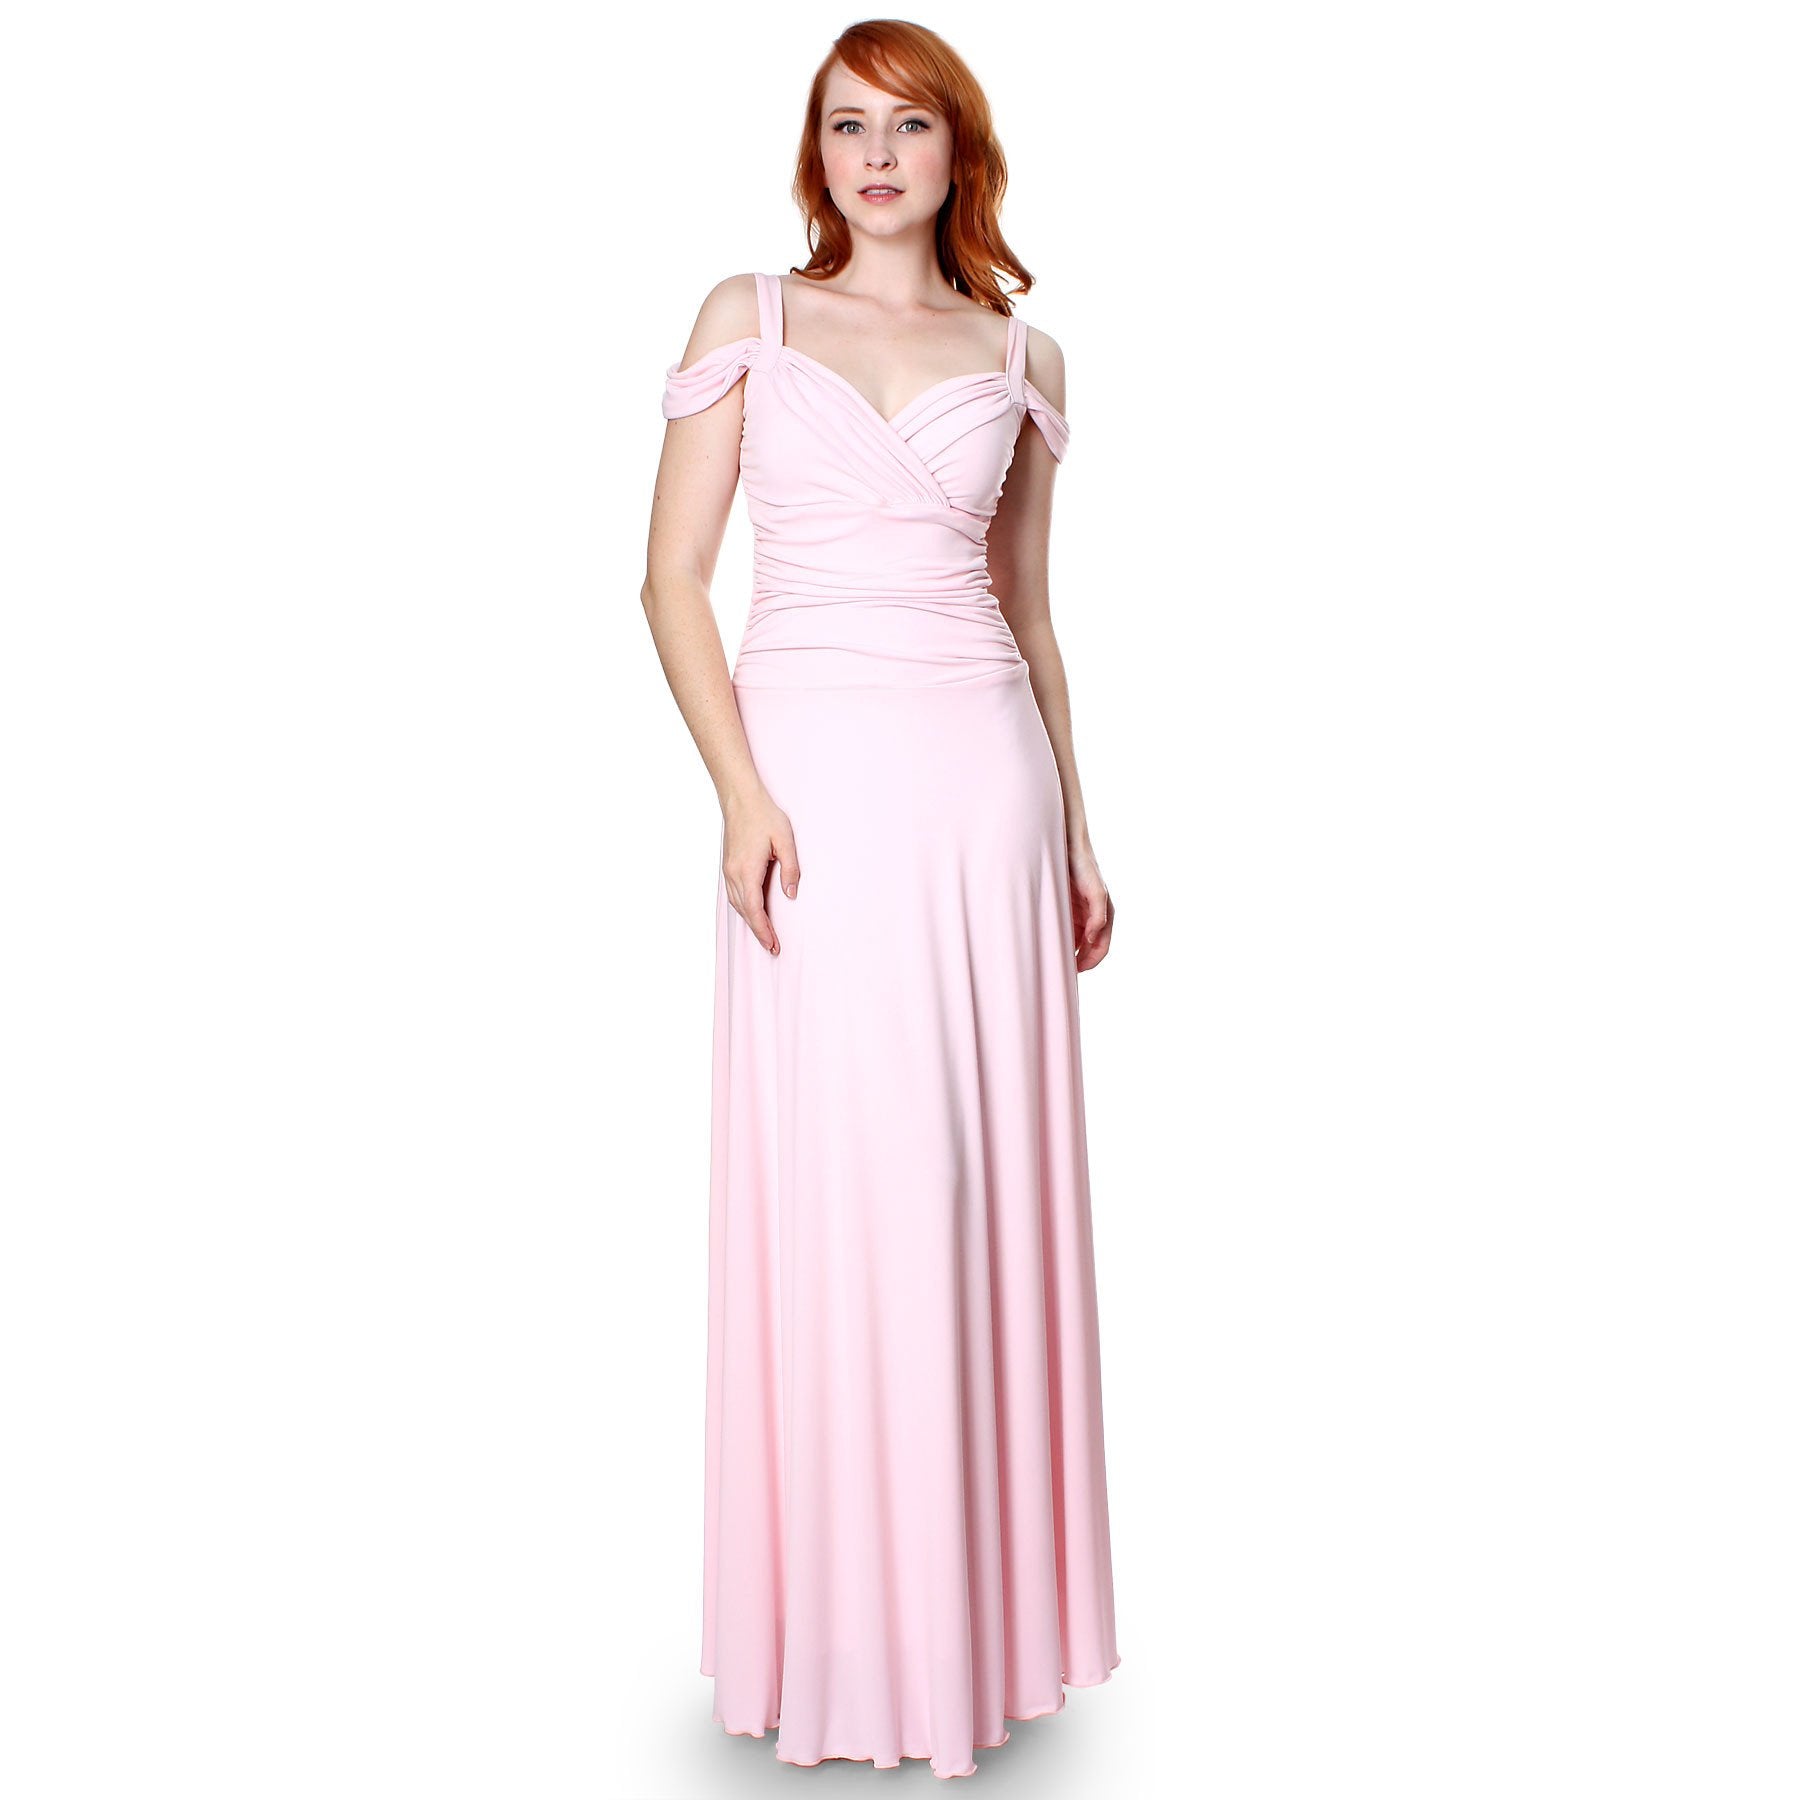 Women's Slip On Elegant Formal Long Evening Dress